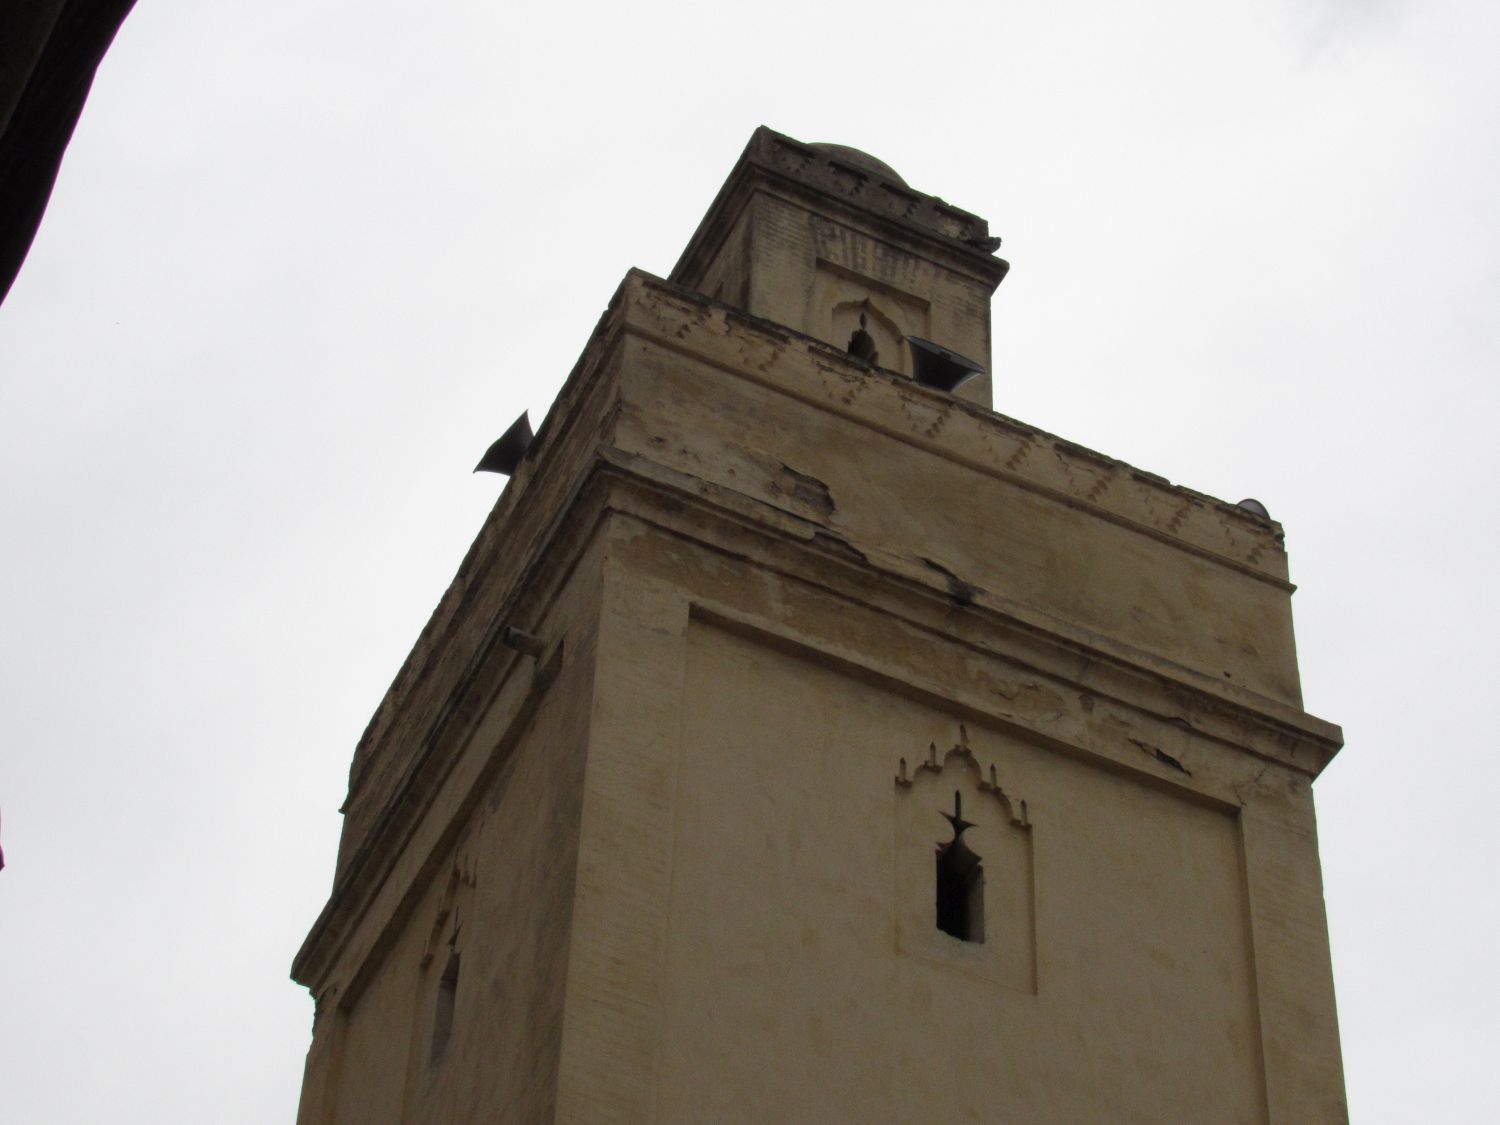 Exterior view, minaret apex.